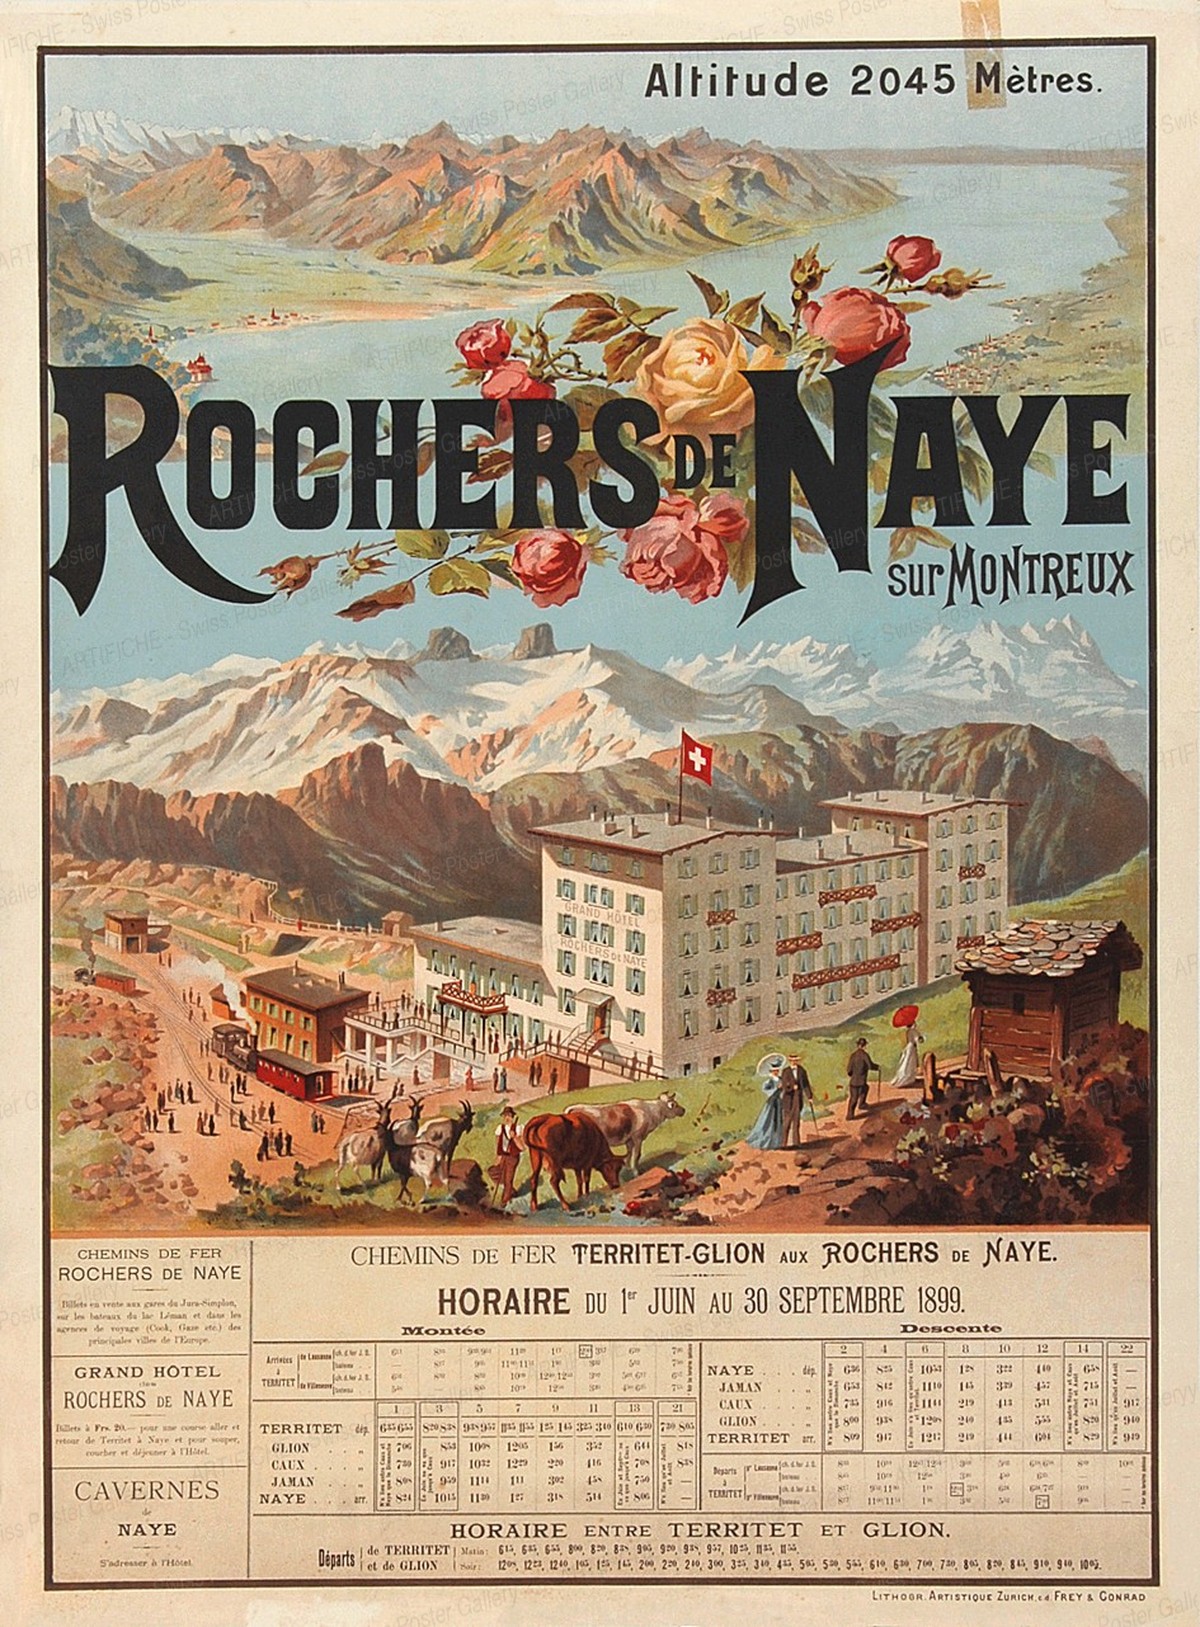 Rochers de Naye, Anton Reckziegel